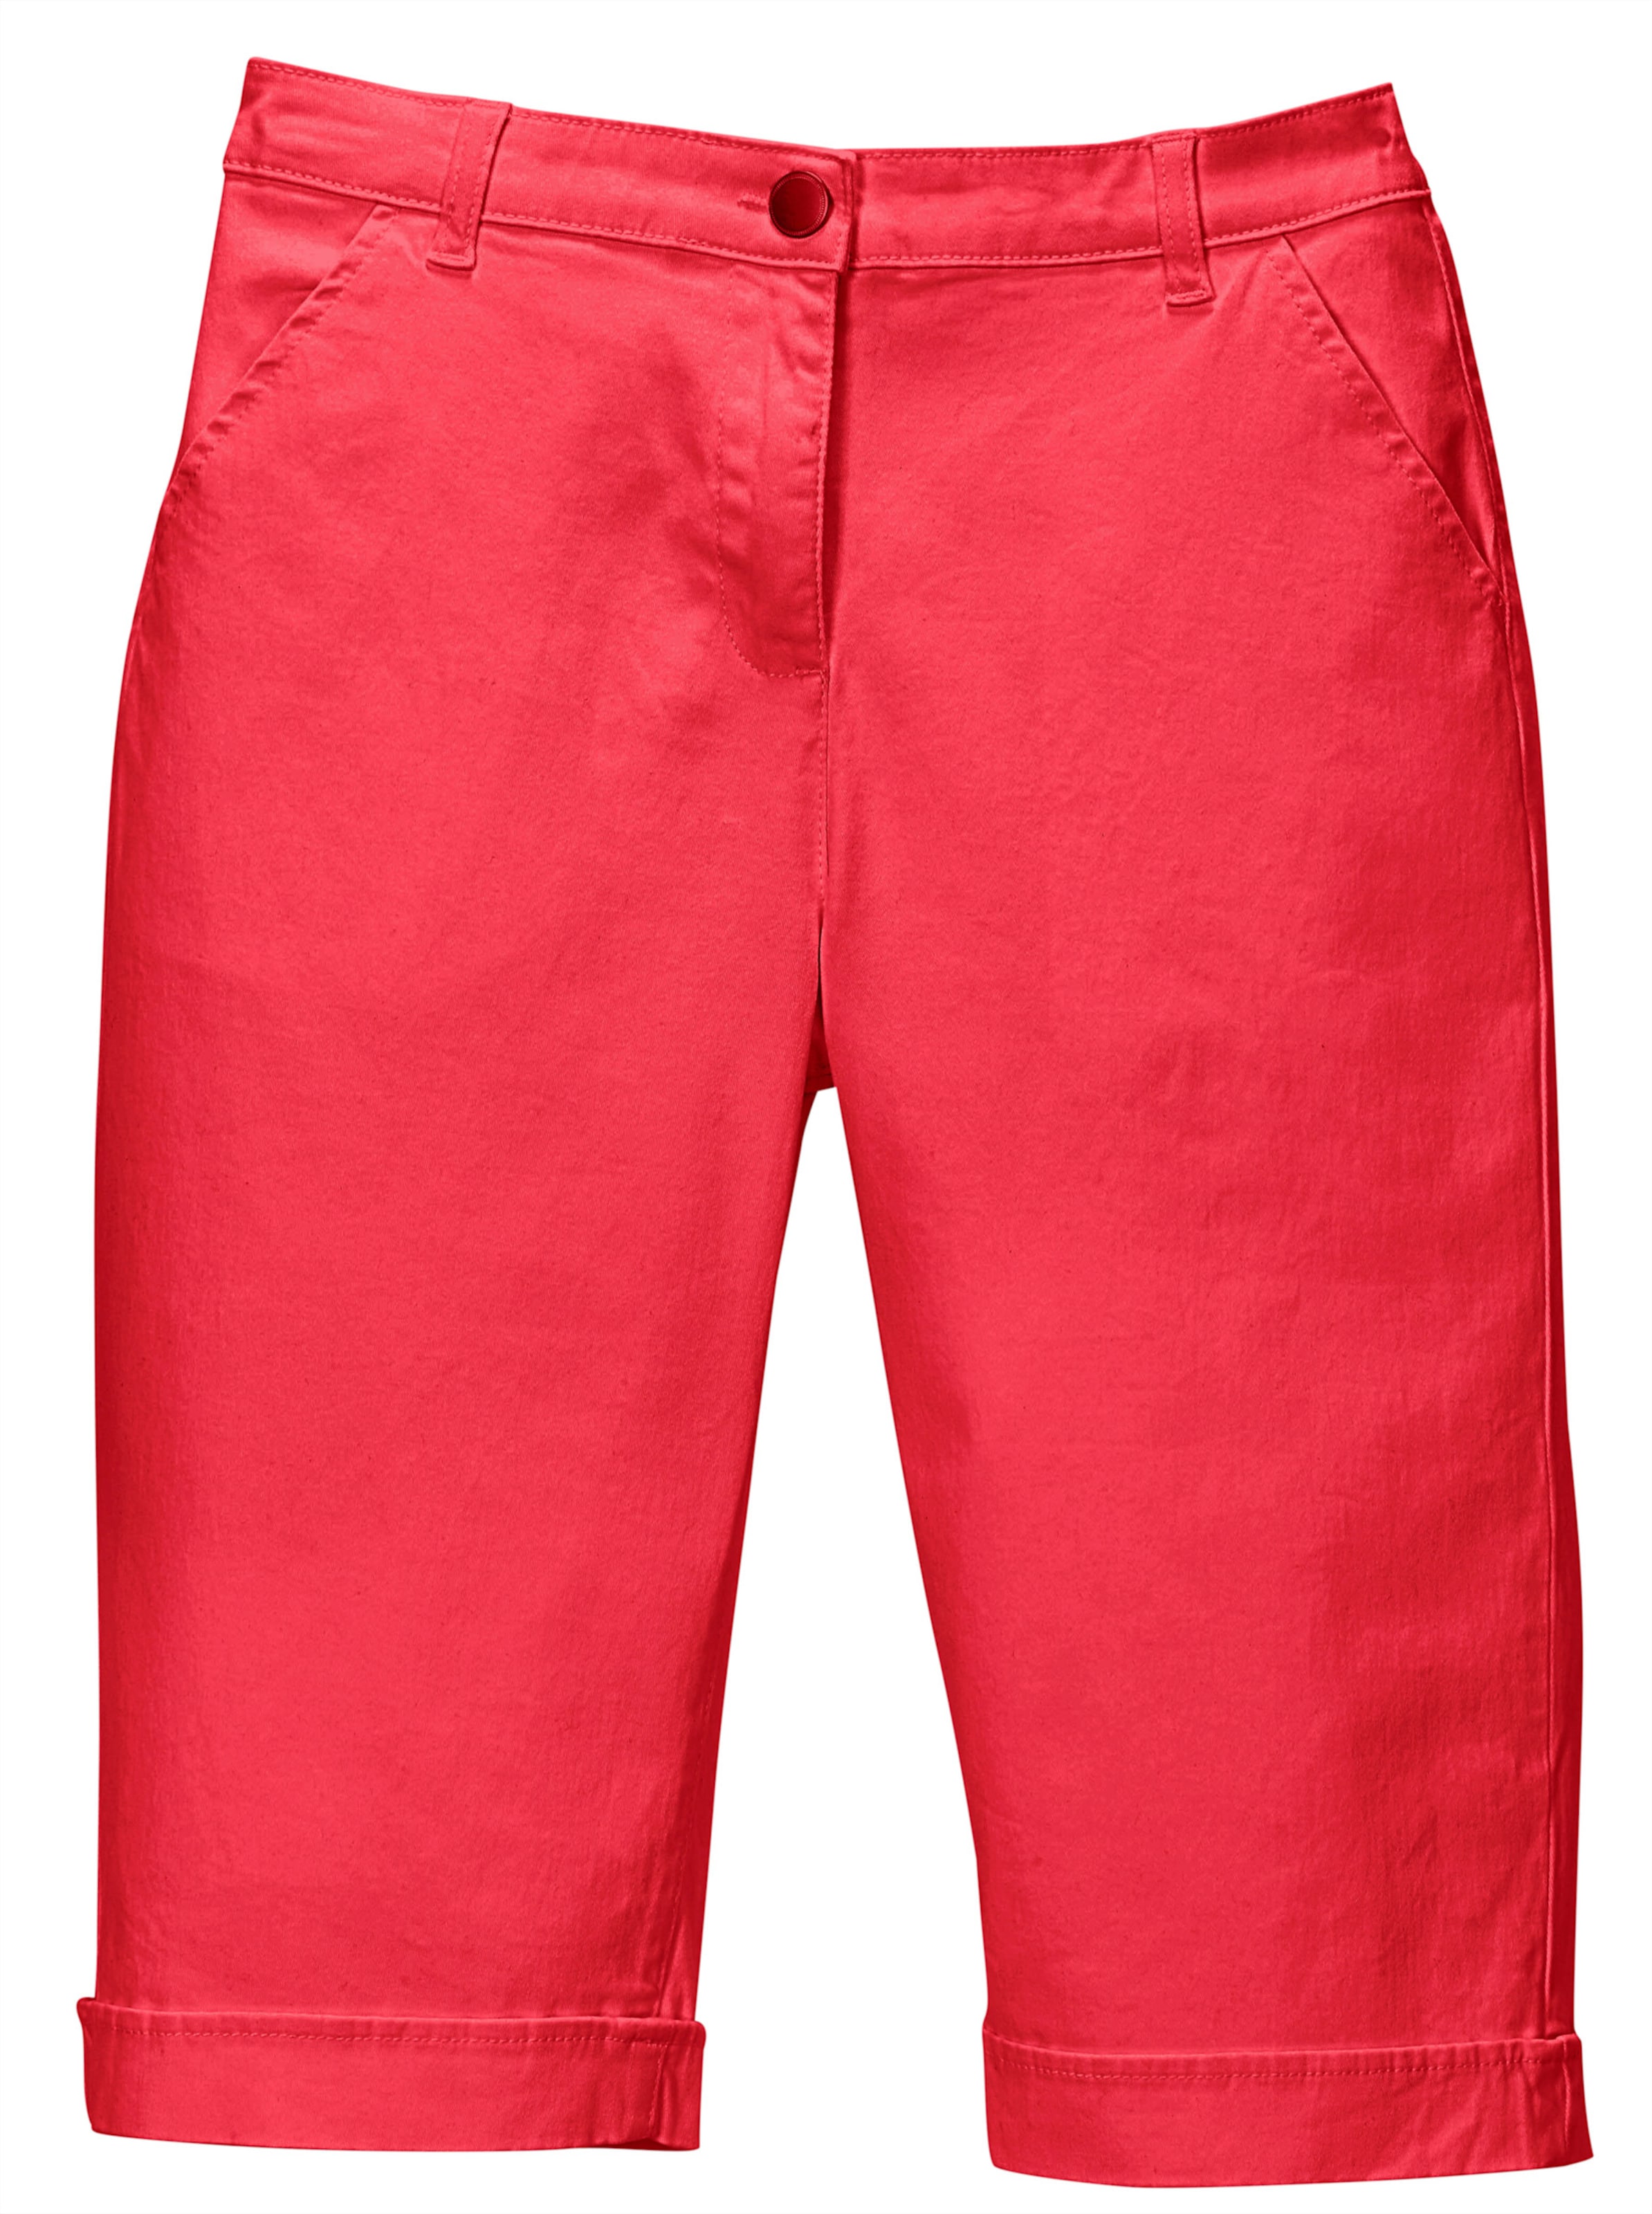 VORNE günstig Kaufen-Jeansbermudas in rot von heine. Jeansbermudas in rot von heine <![CDATA[Lässige Jeans-Bermudas in aktuellen Sommerfarben. Mit rückwärtigem Dehnbund, Gürtelschlaufen sowie Knopf und Reißverschluss. 2 Taschen vorne, 2 imitierte Gesäßtaschen. Am Saum 